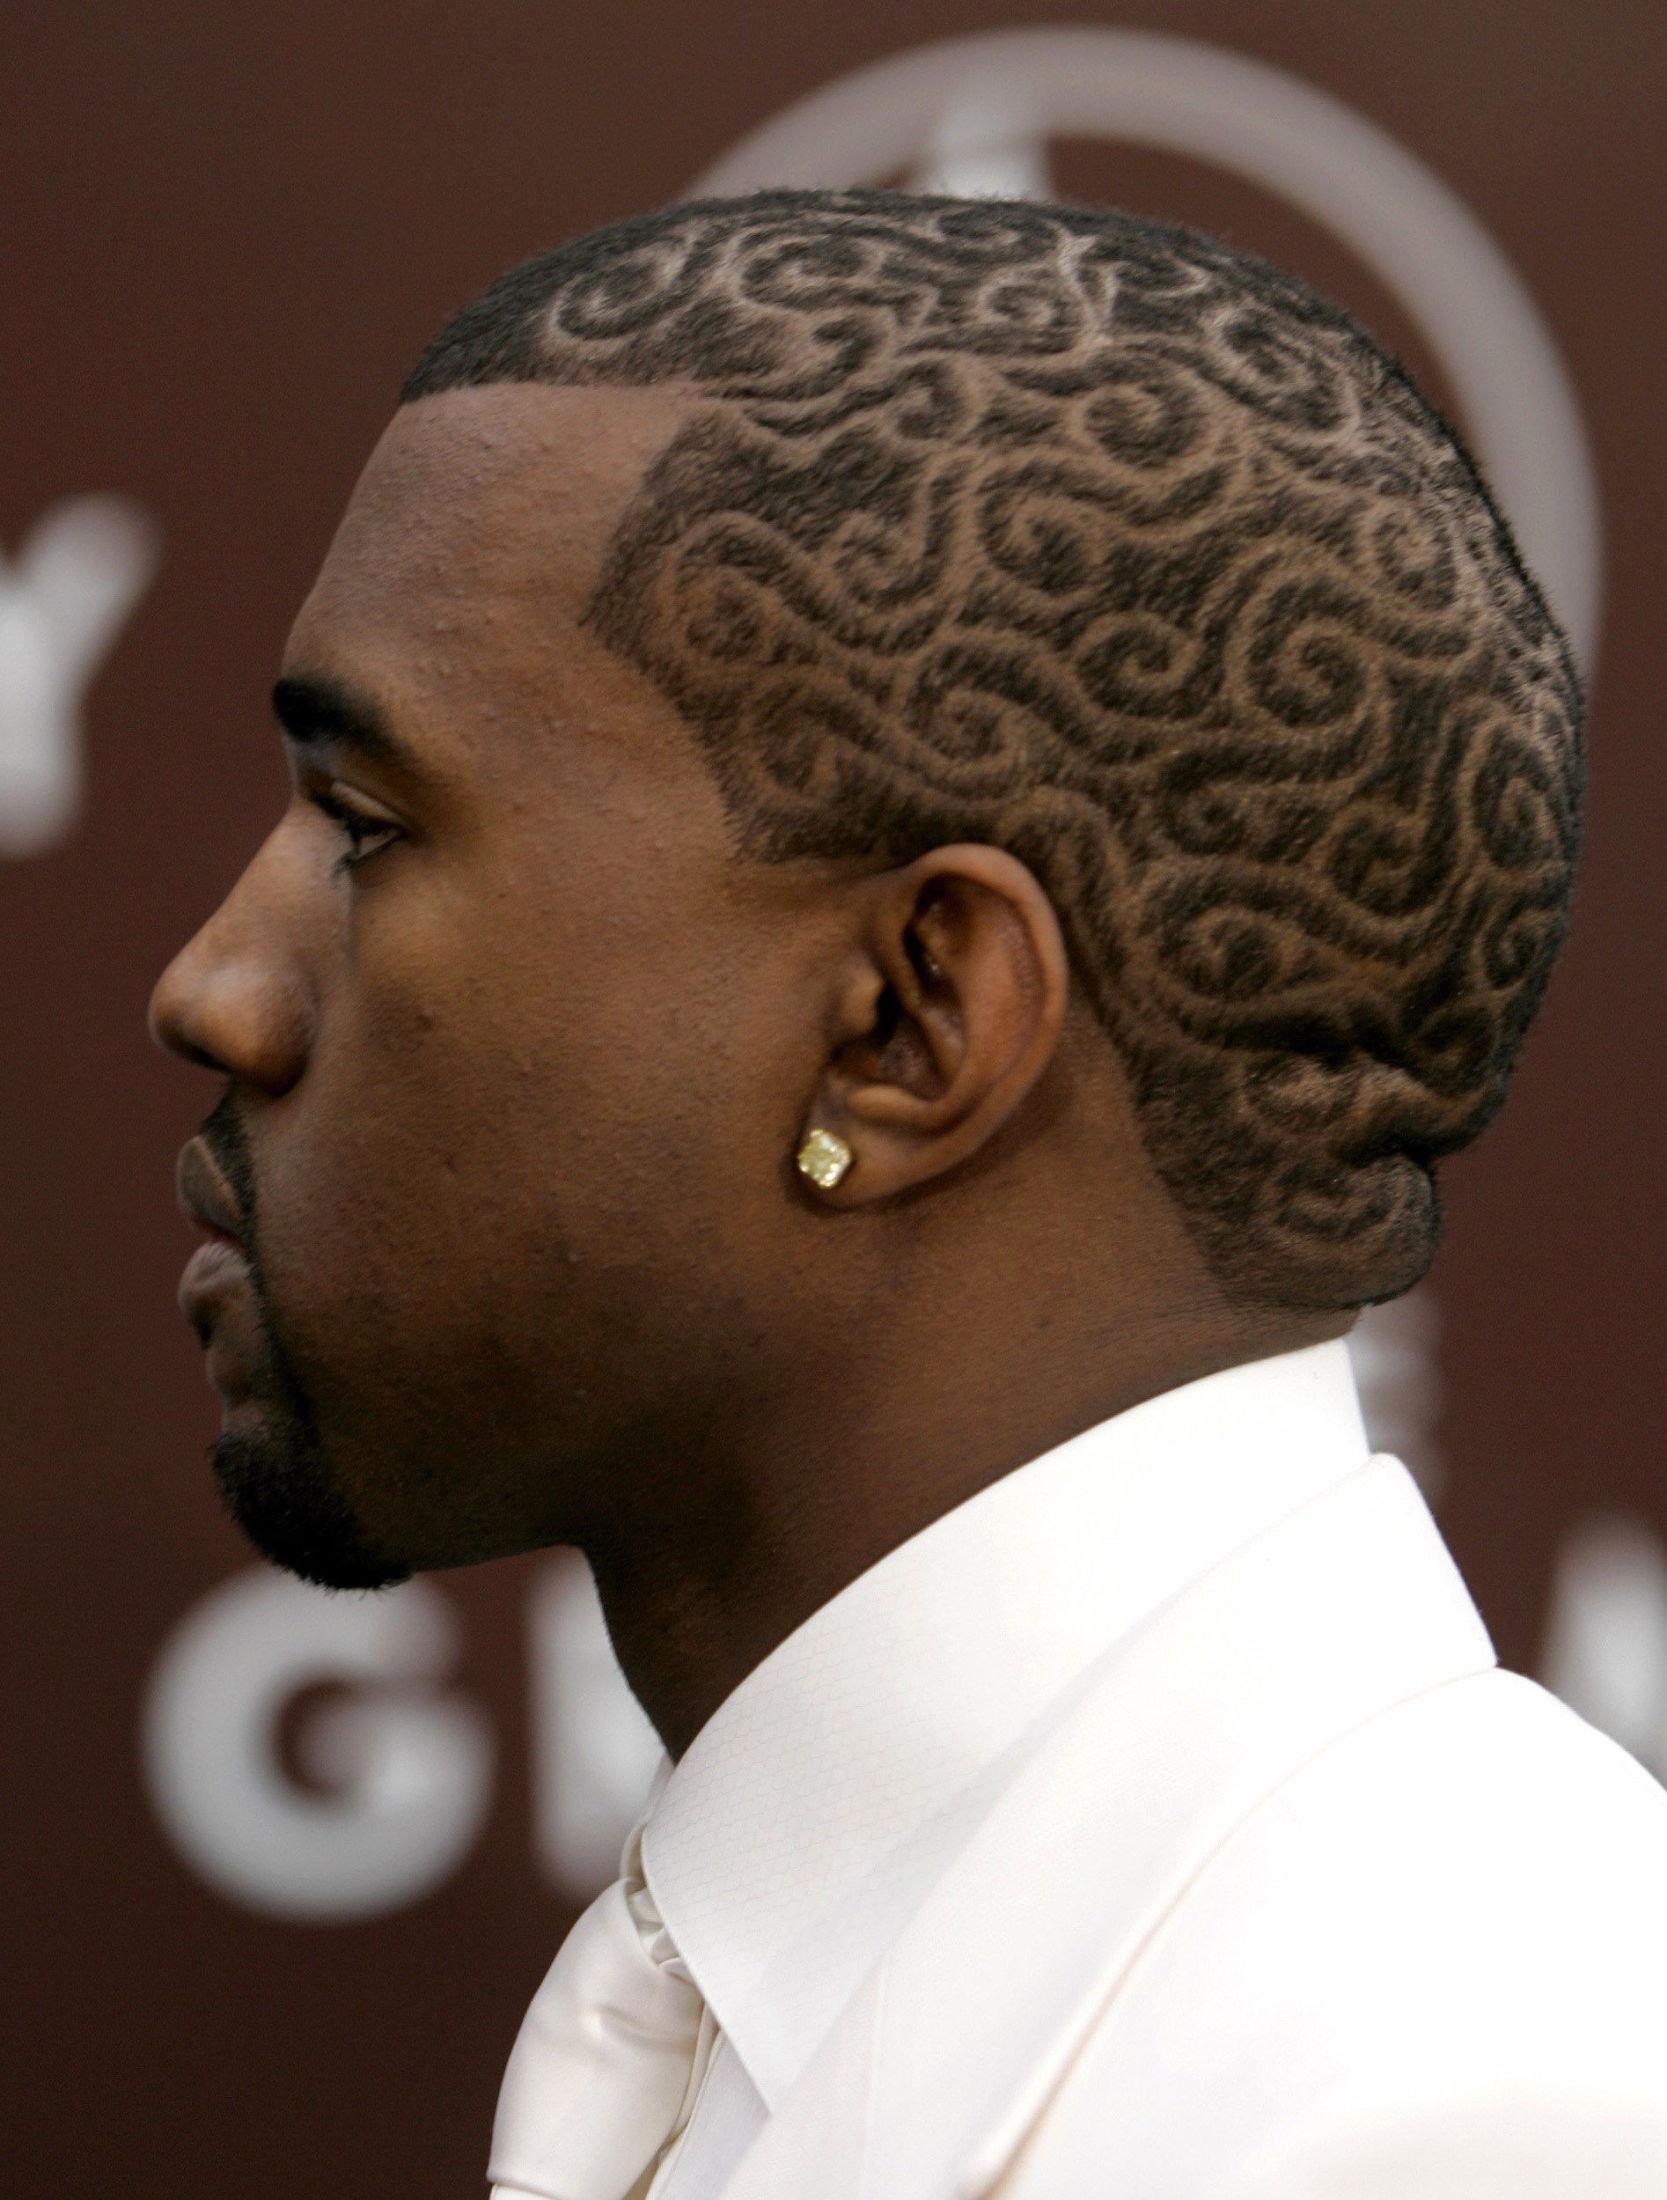 HEI SVEIS: Kanye West gikk for en litt annerledes frisyre på Grammy-utdelingen i 2005. Foto: Reuters